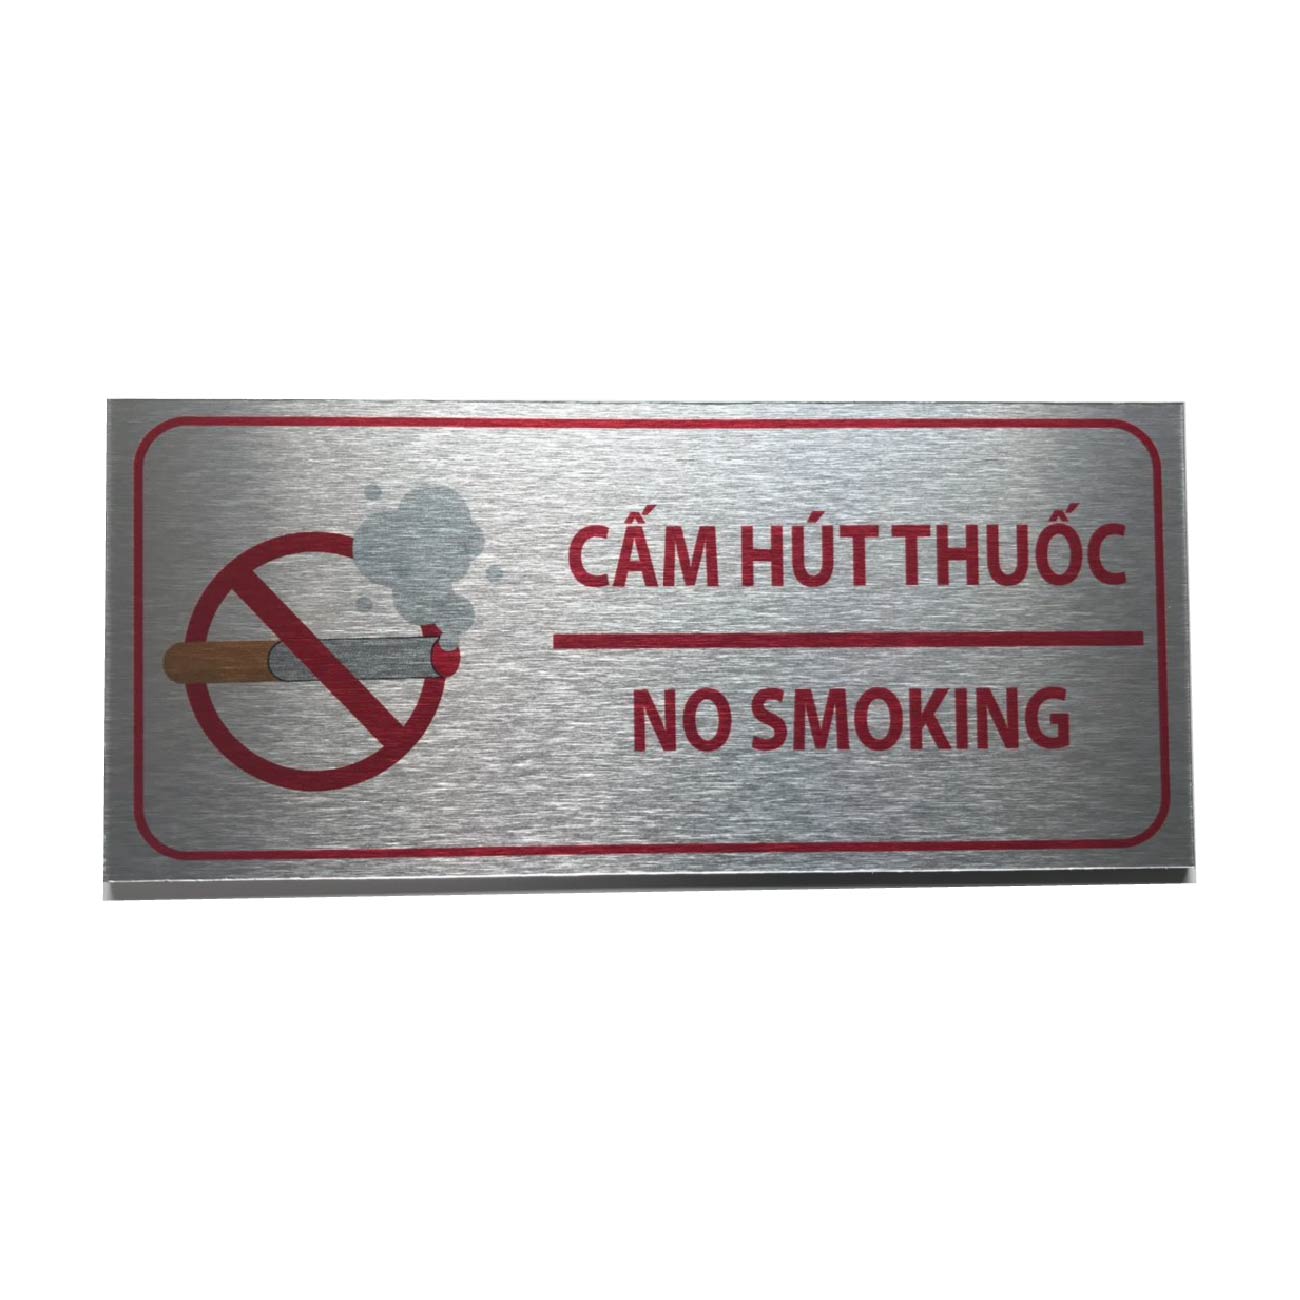 No Smoking, bảng cấm hút thuốc, bảng cấm smoking nhiều mẫu